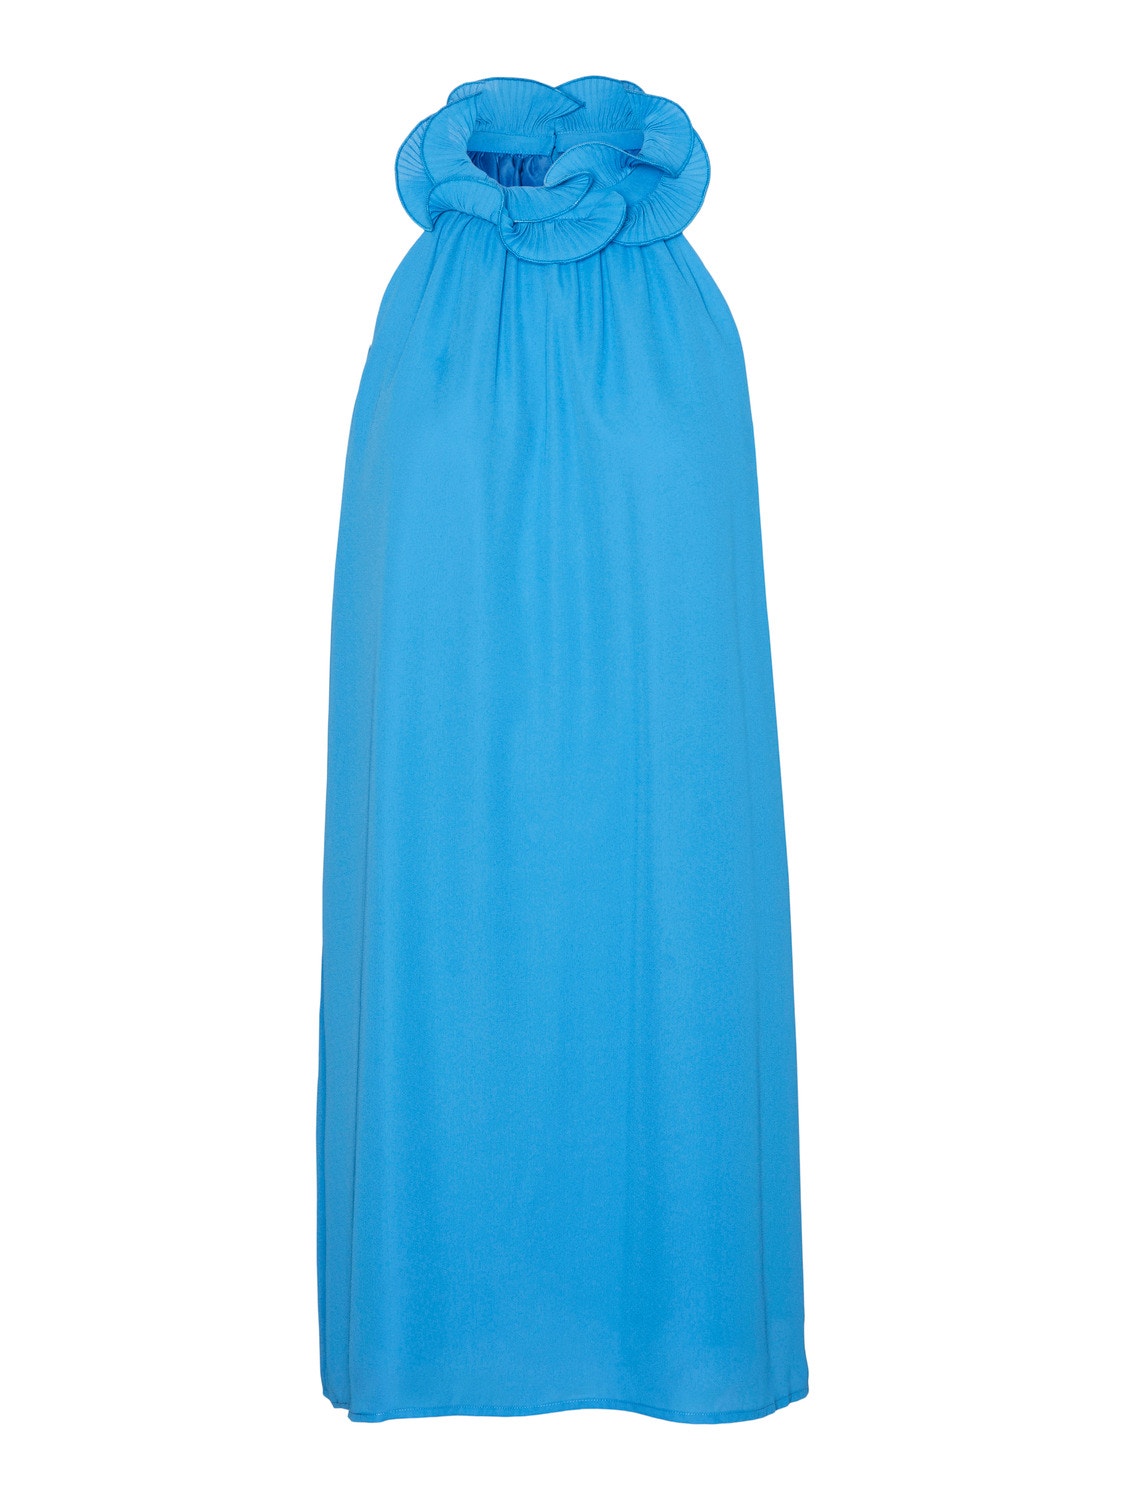 Vero Moda VMMERA Short dress -Ibiza Blue - 10307309